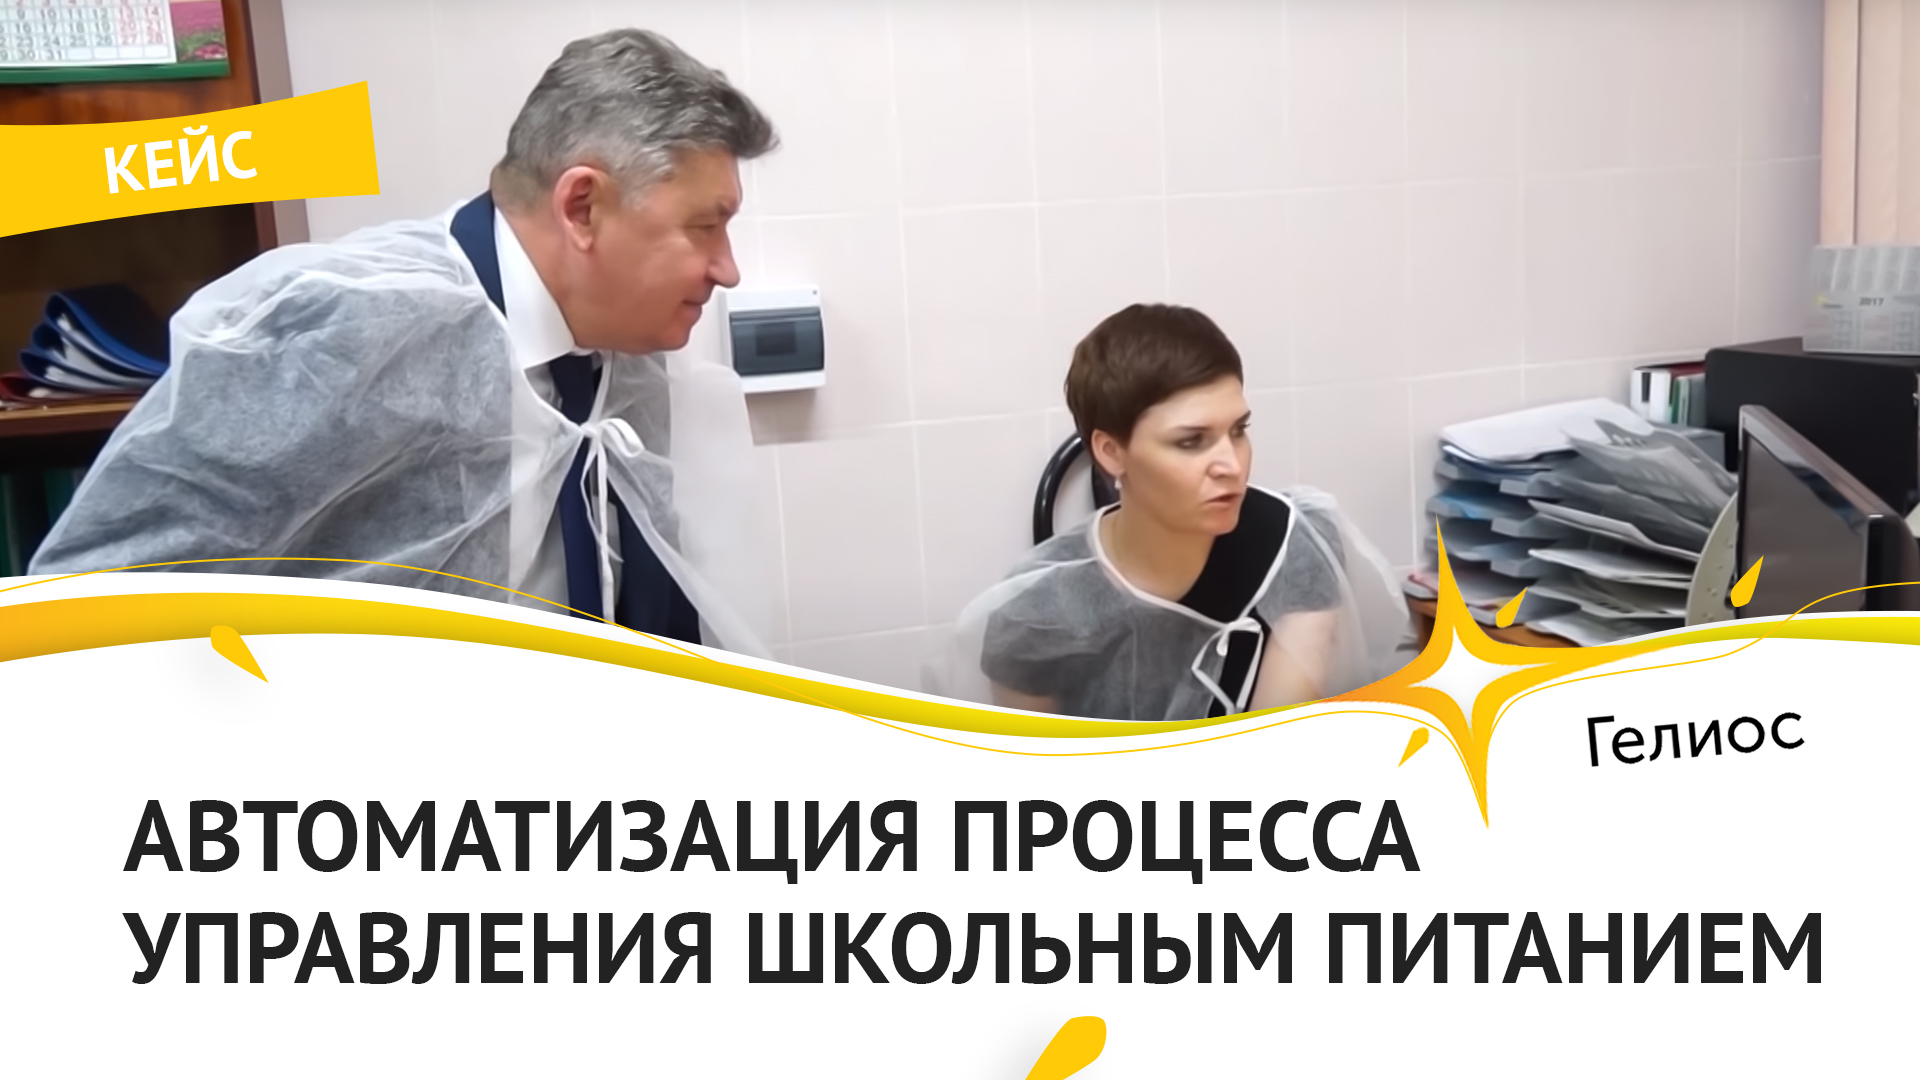 Автоматизация школьного питания в школе № 24. Социальный проект  ГК 'Гелиос' в Костроме